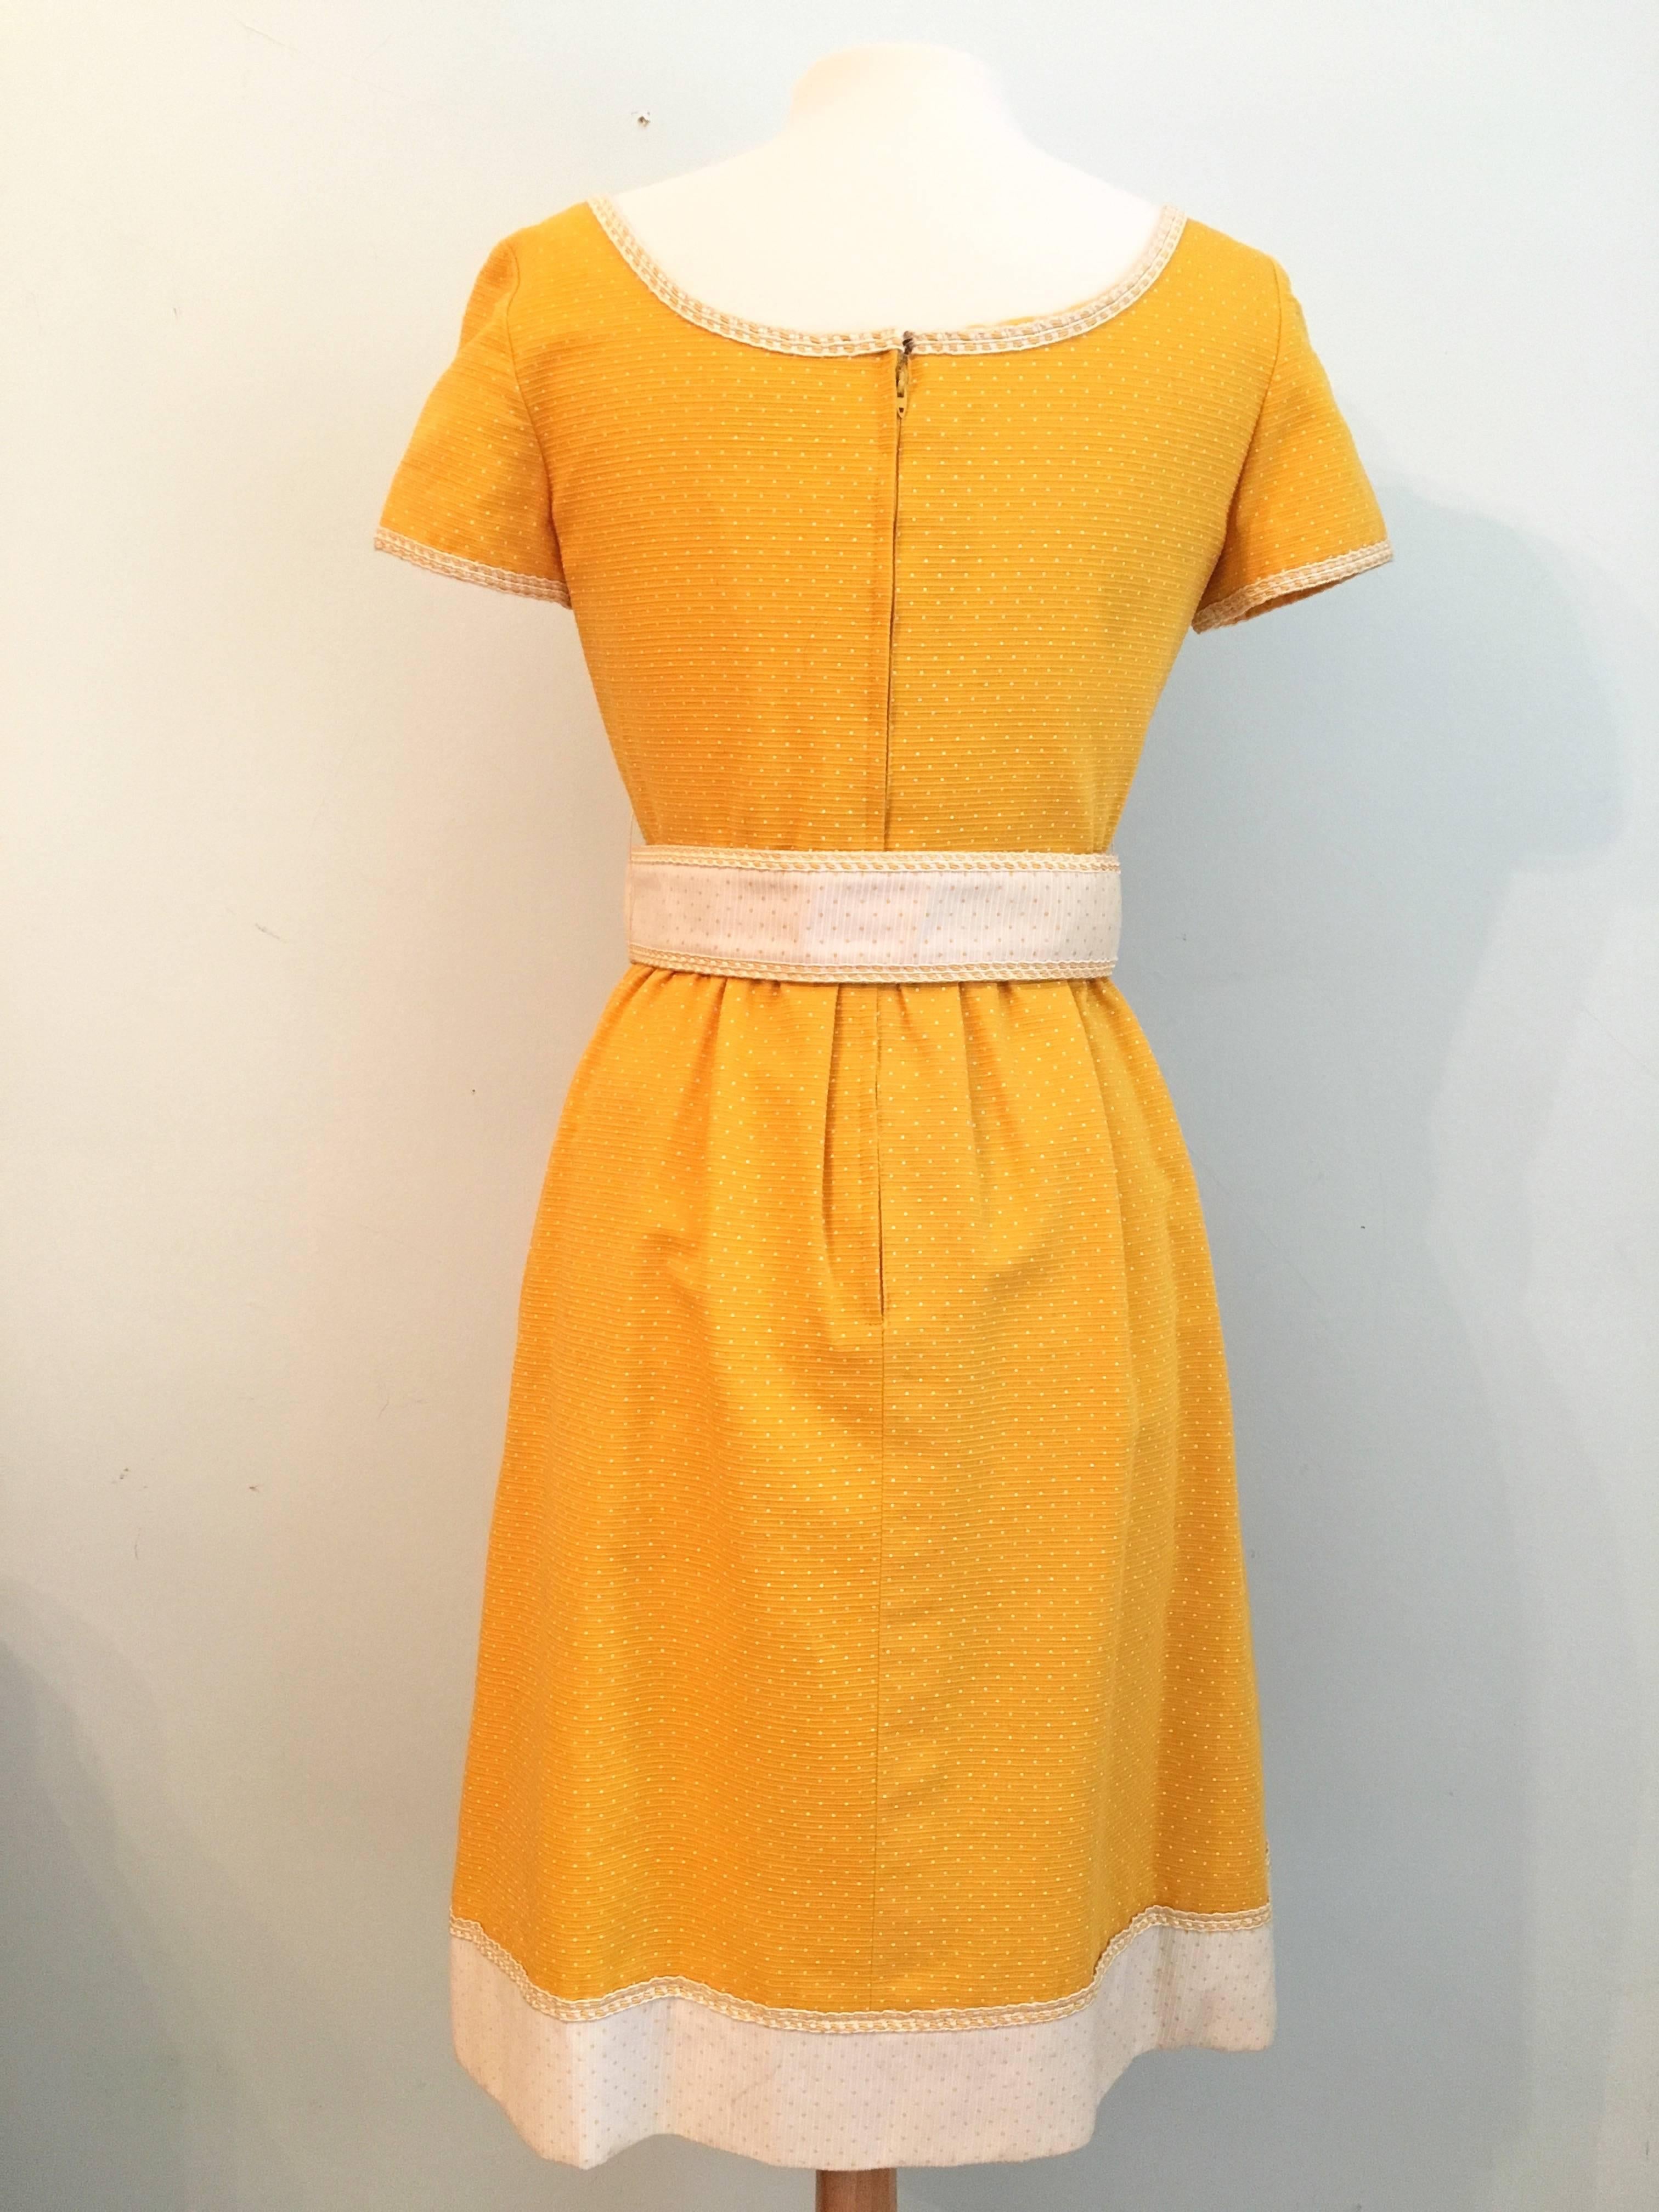 Oscar De La Renta Boutique Yellow Polka Dot Dress, 1960s  For Sale 2